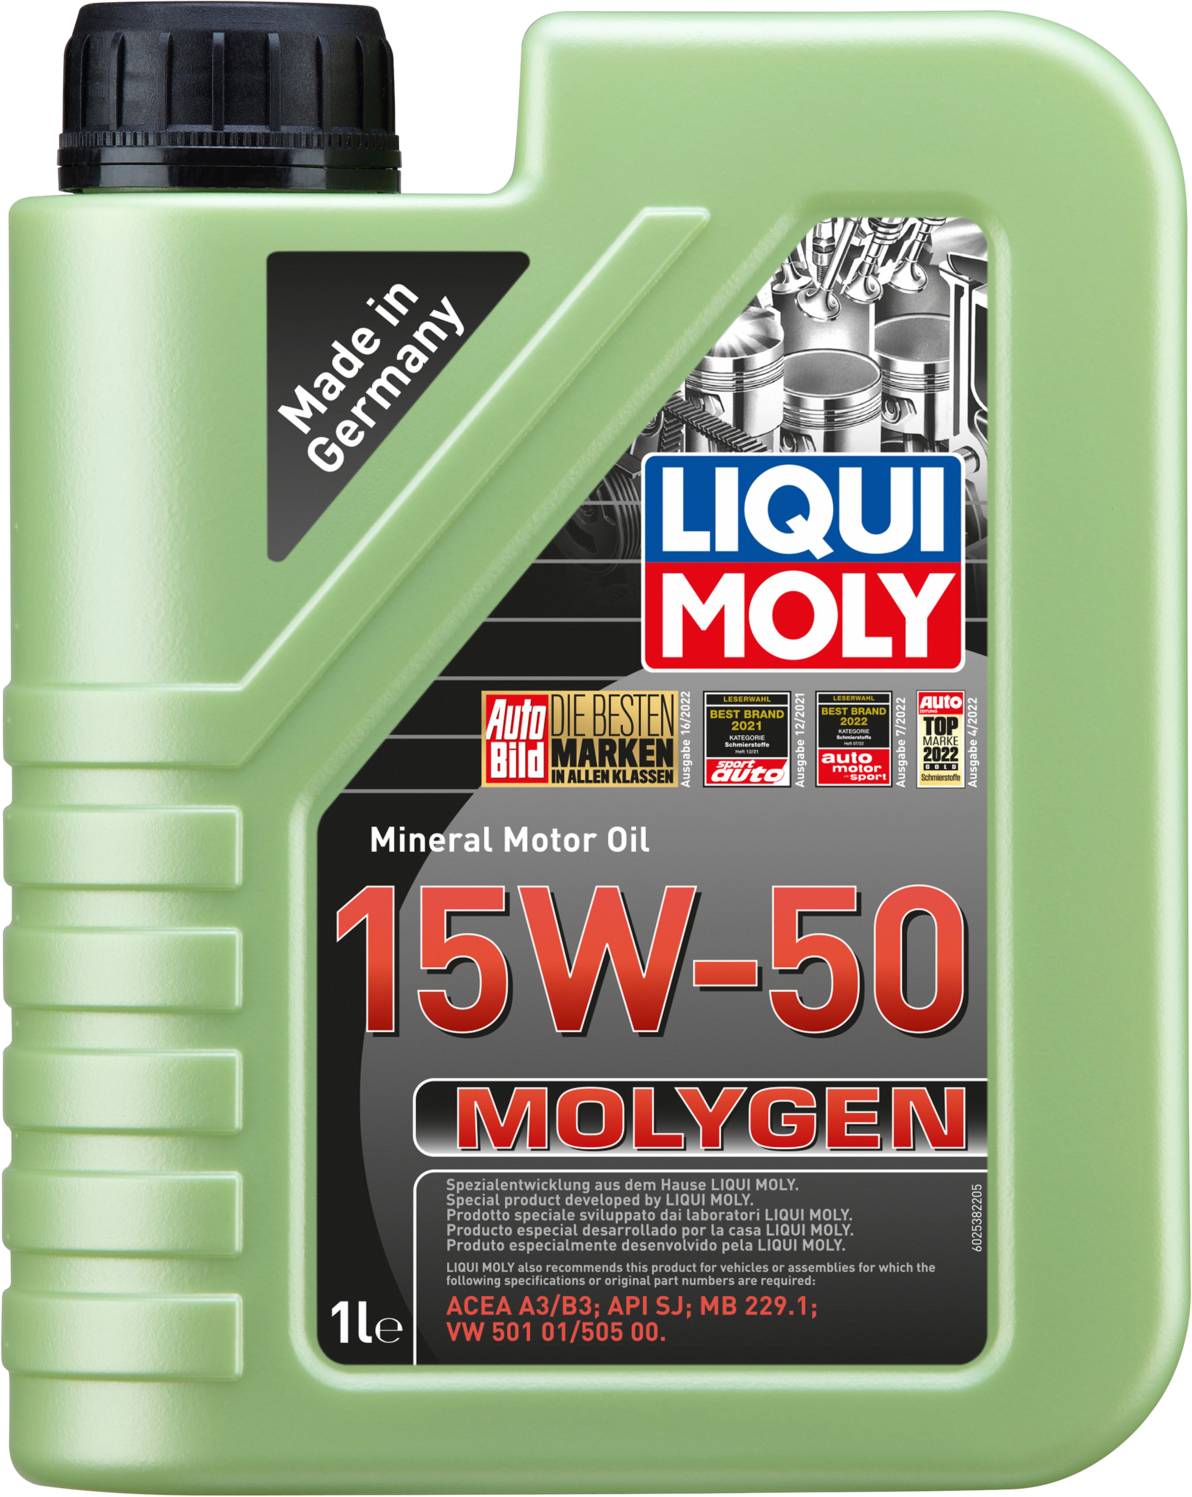 Liqui Moly Molygen 15W-50, 1 lt